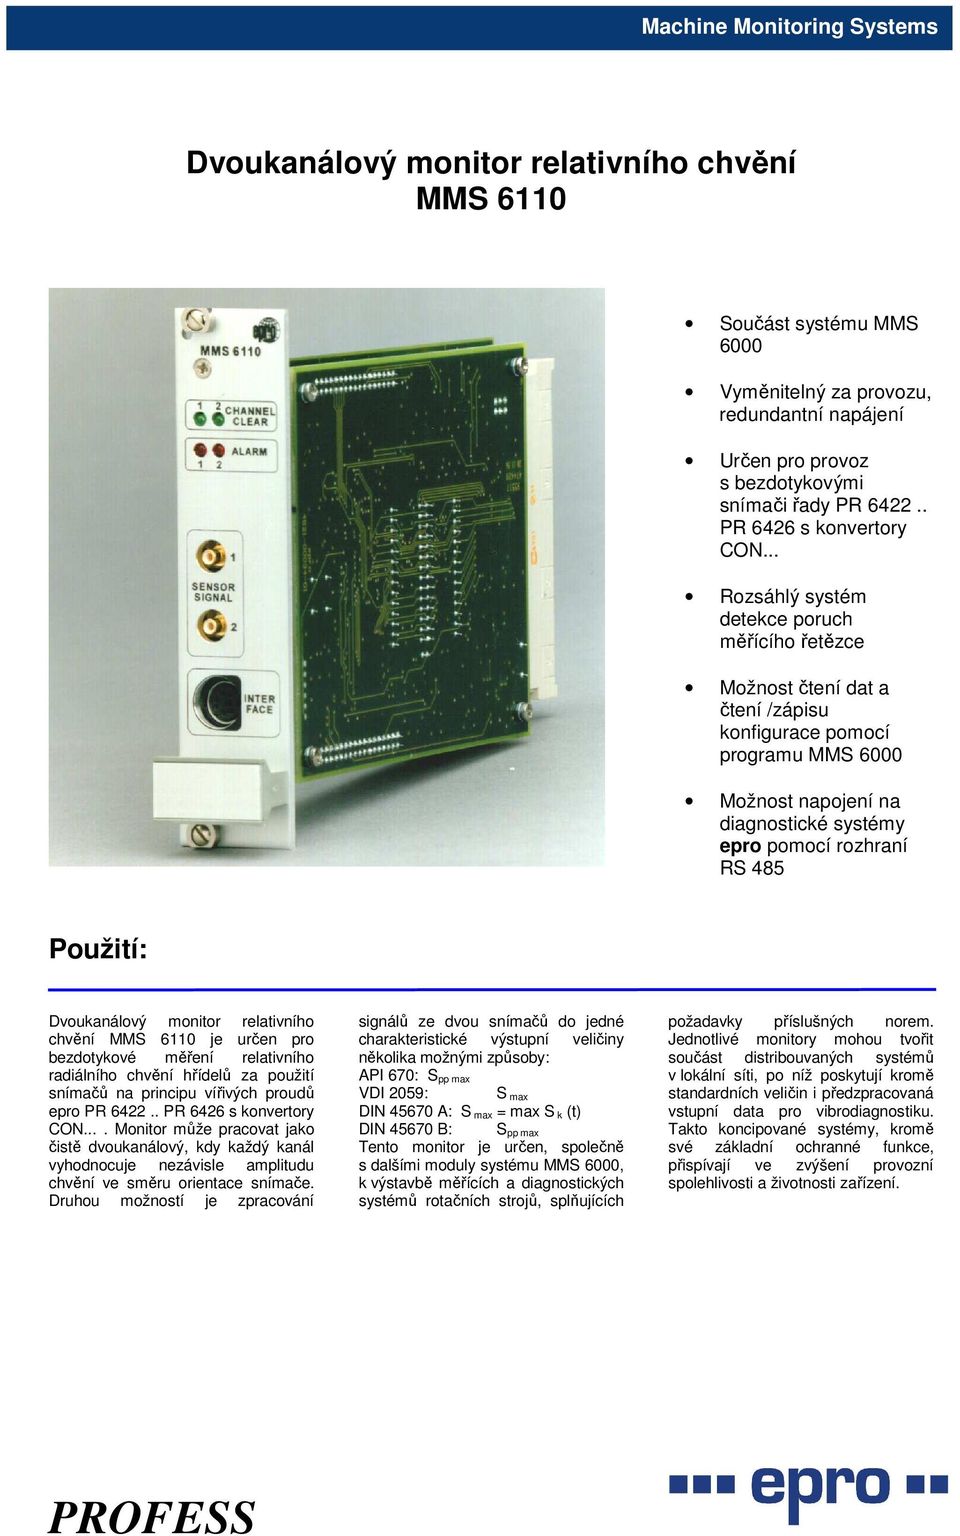 Dvoukanálový monitor relativního chvění MMS 6110 je určen pro bezdotykové měření relativního radiálního chvění hřídelů za použití snímačů na principu vířivých proudů epro PR 6422.